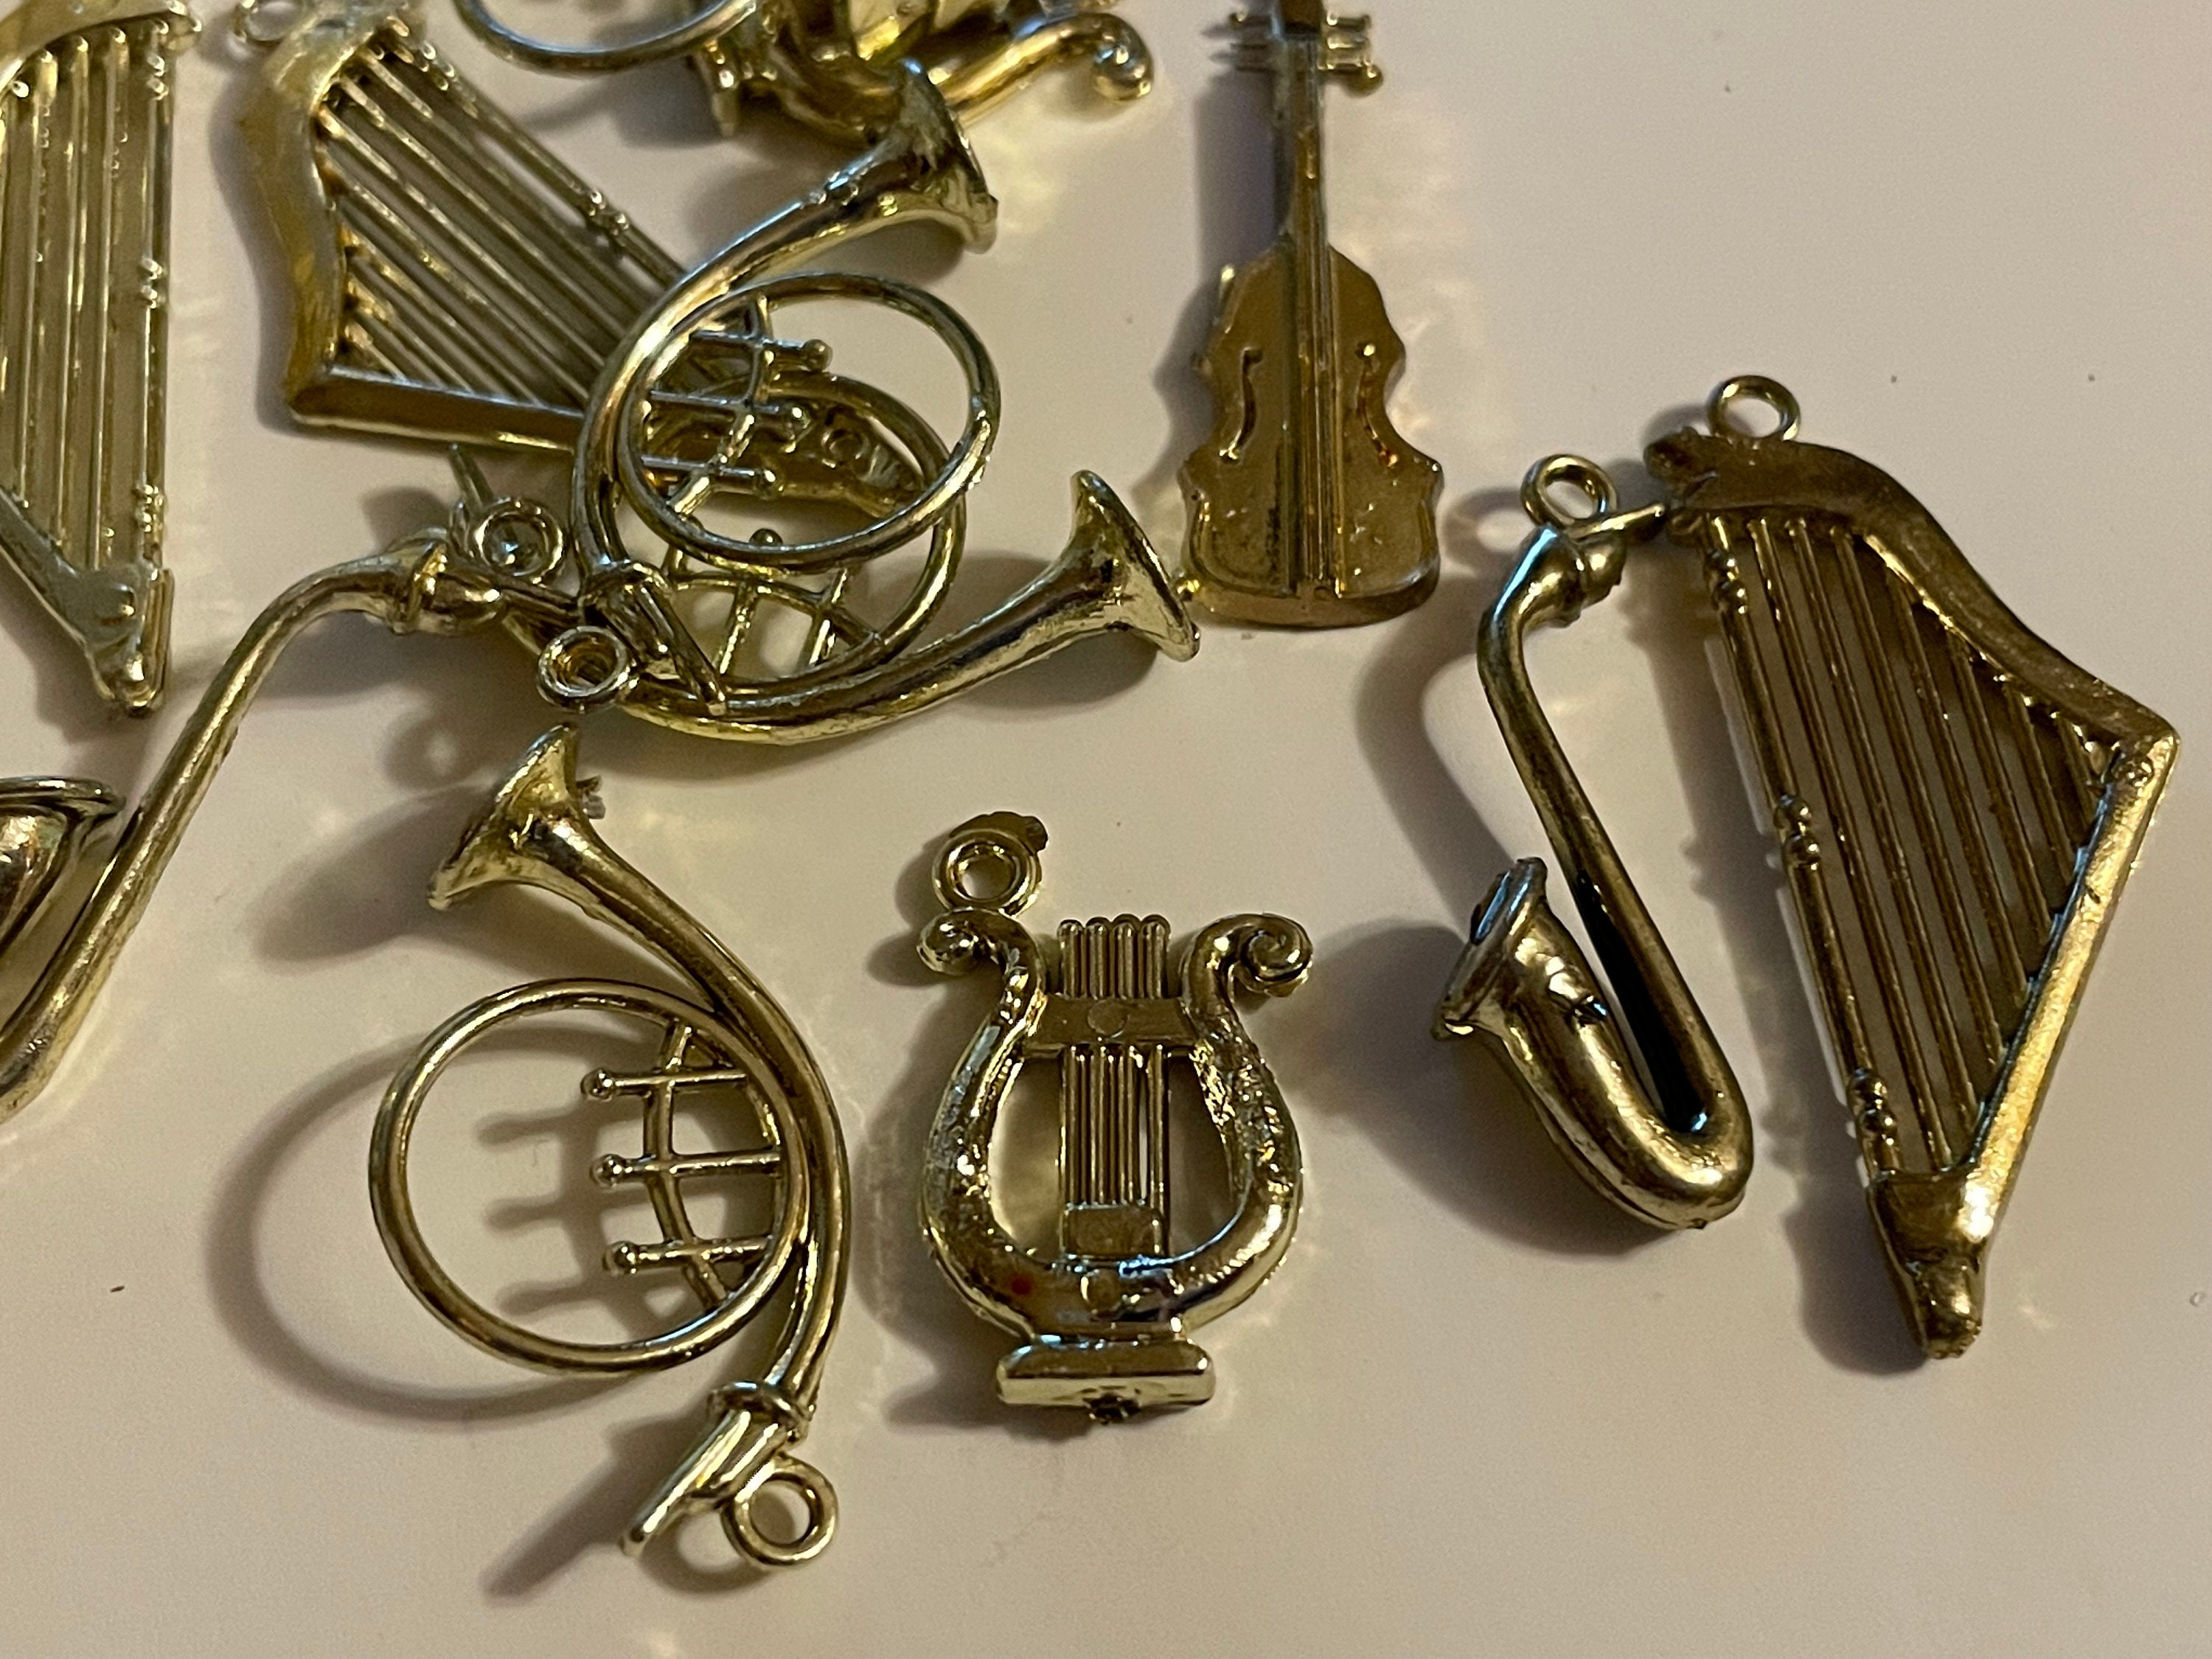 6 Count Assorted Gold Color Plastic Mini Instrument Ornaments